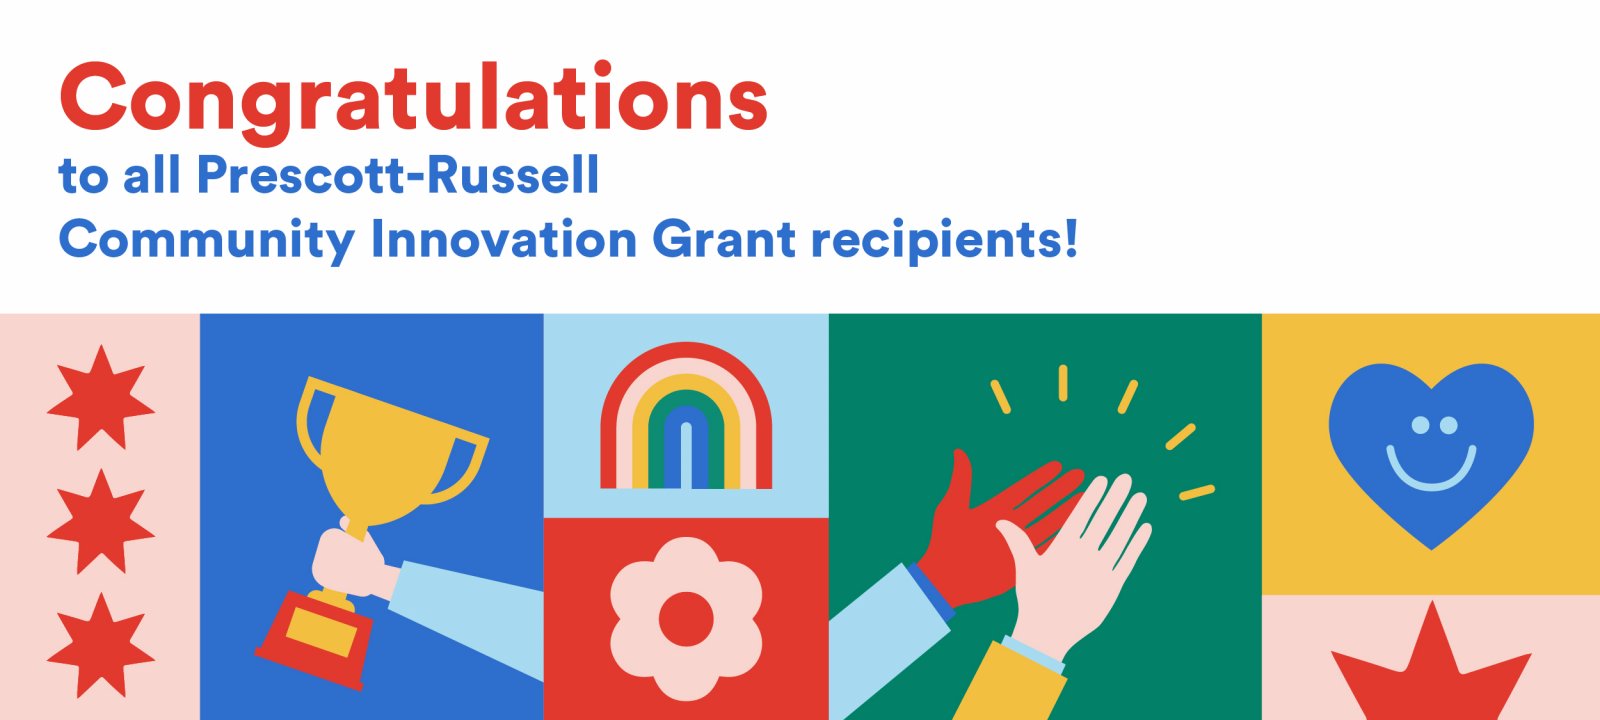 Congratulations to all grant recipients